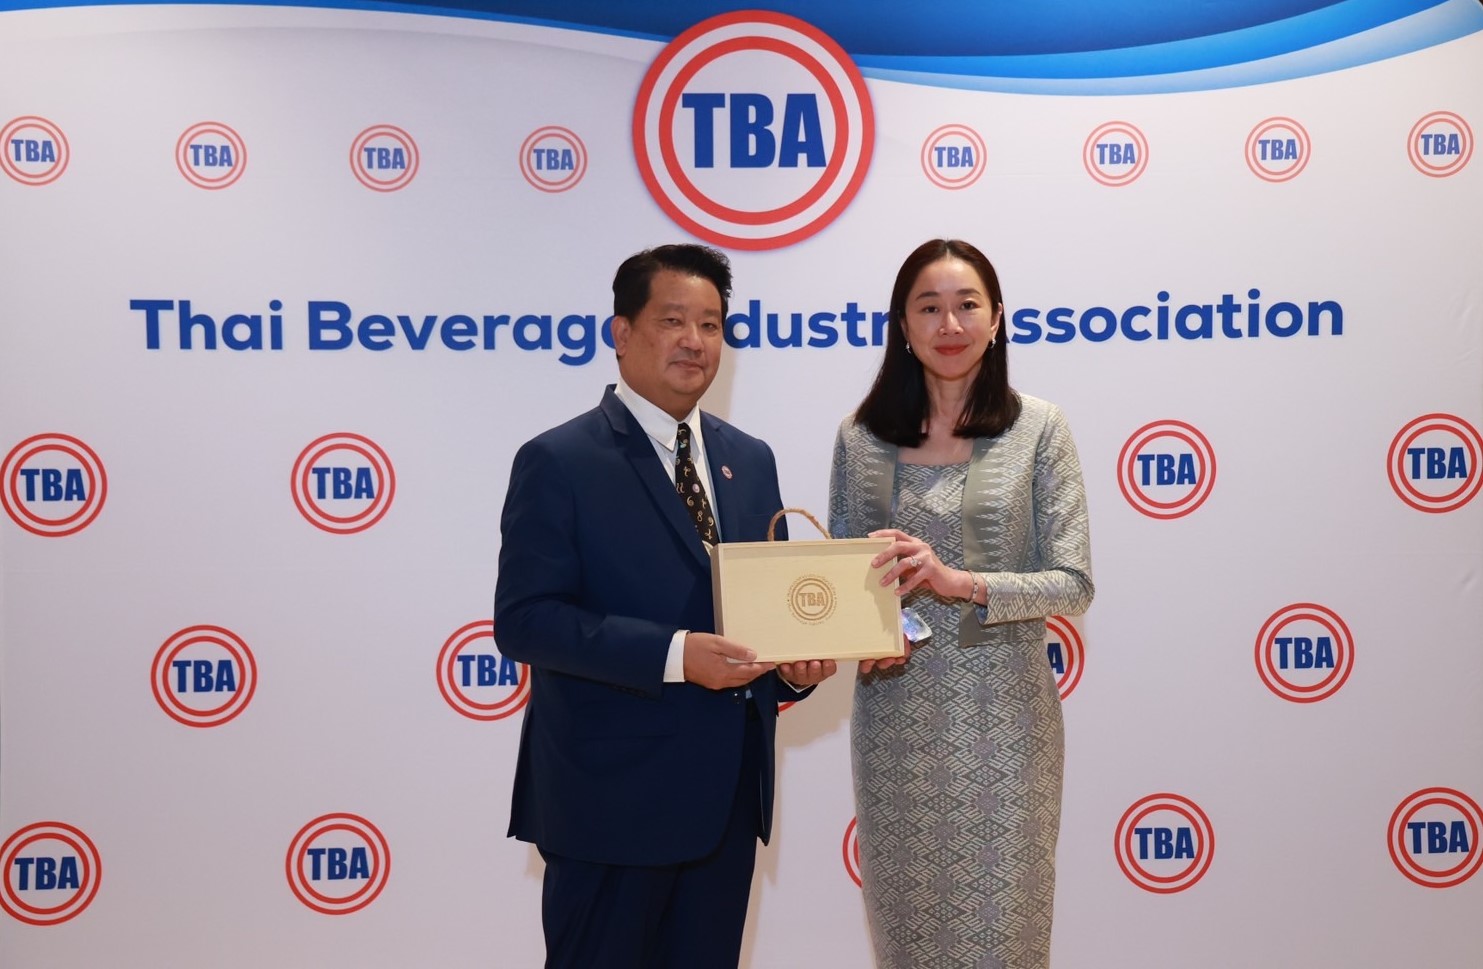 ดอยคำ ร่วมงาน สมาคมอุตสาหกรรมเครื่องดื่มไทย "ความยั่งยืนของบรรจุภัณฑ์เพื่อก้าวเข้าสู่ระบบเศรษฐกิจหมุนเวียน"